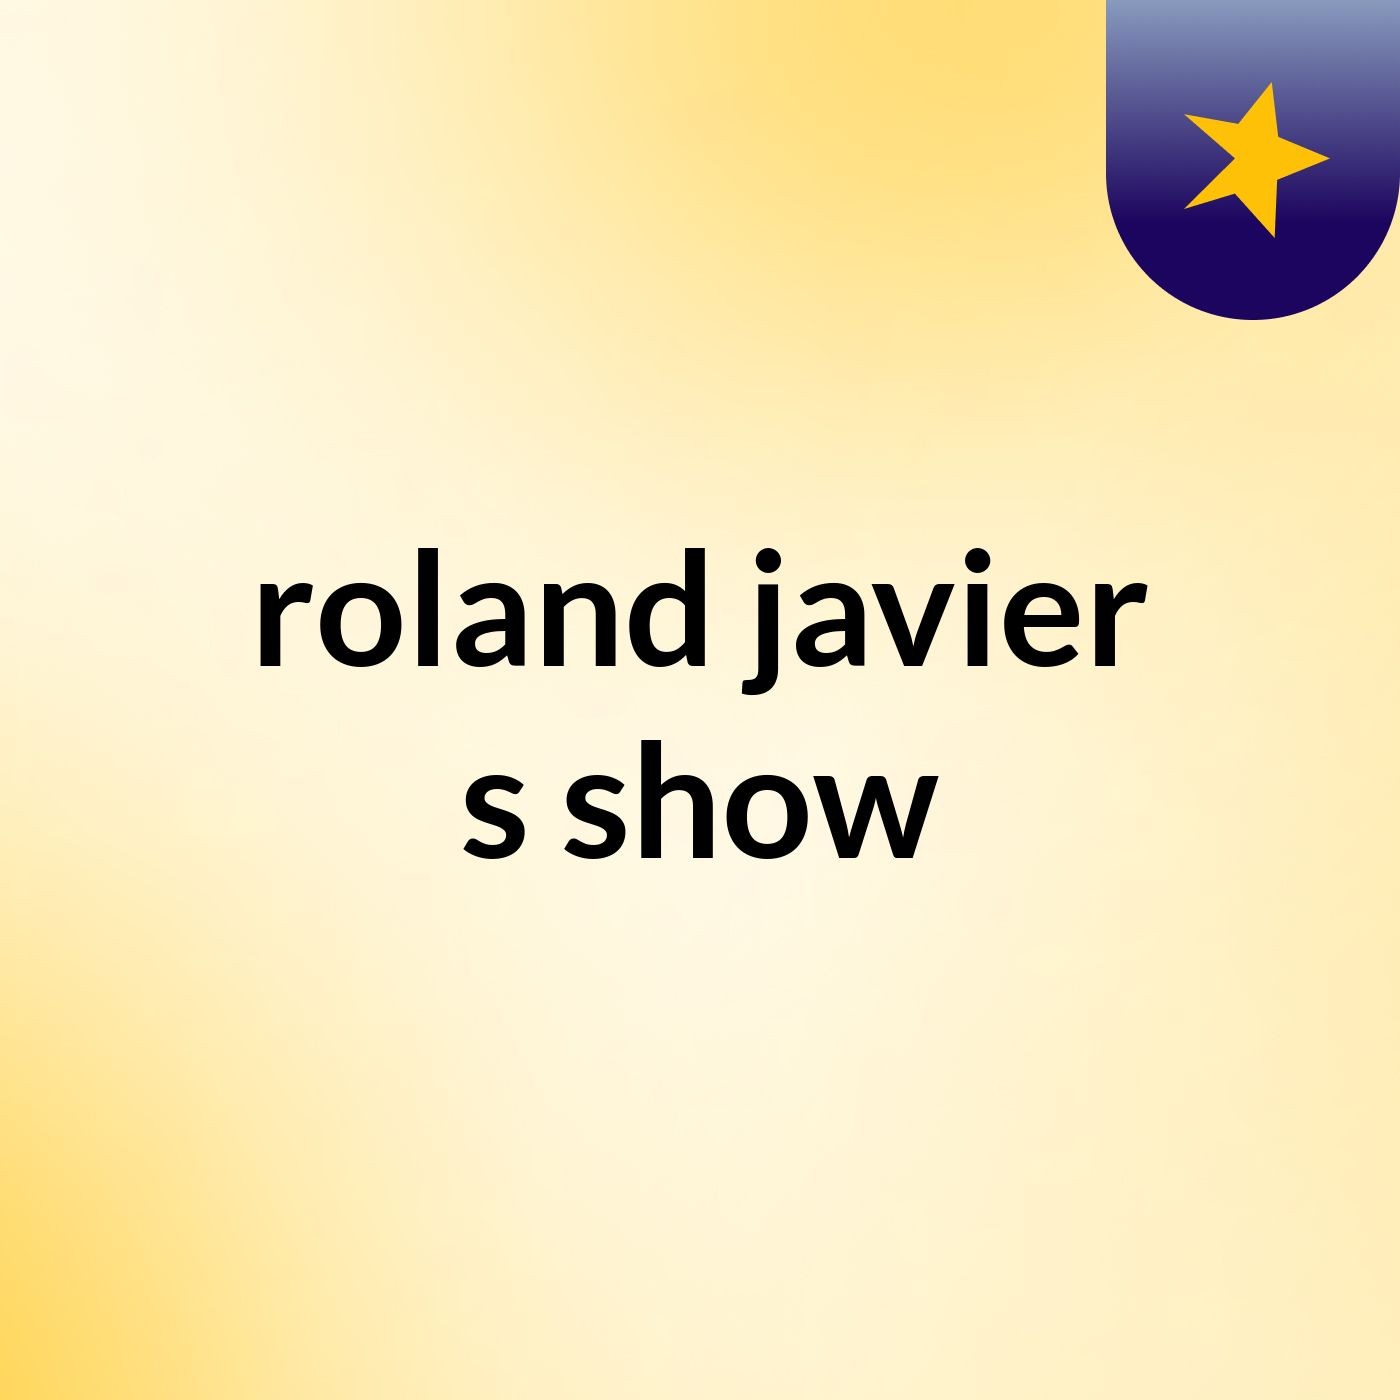 Episode 4 - roland javier's show